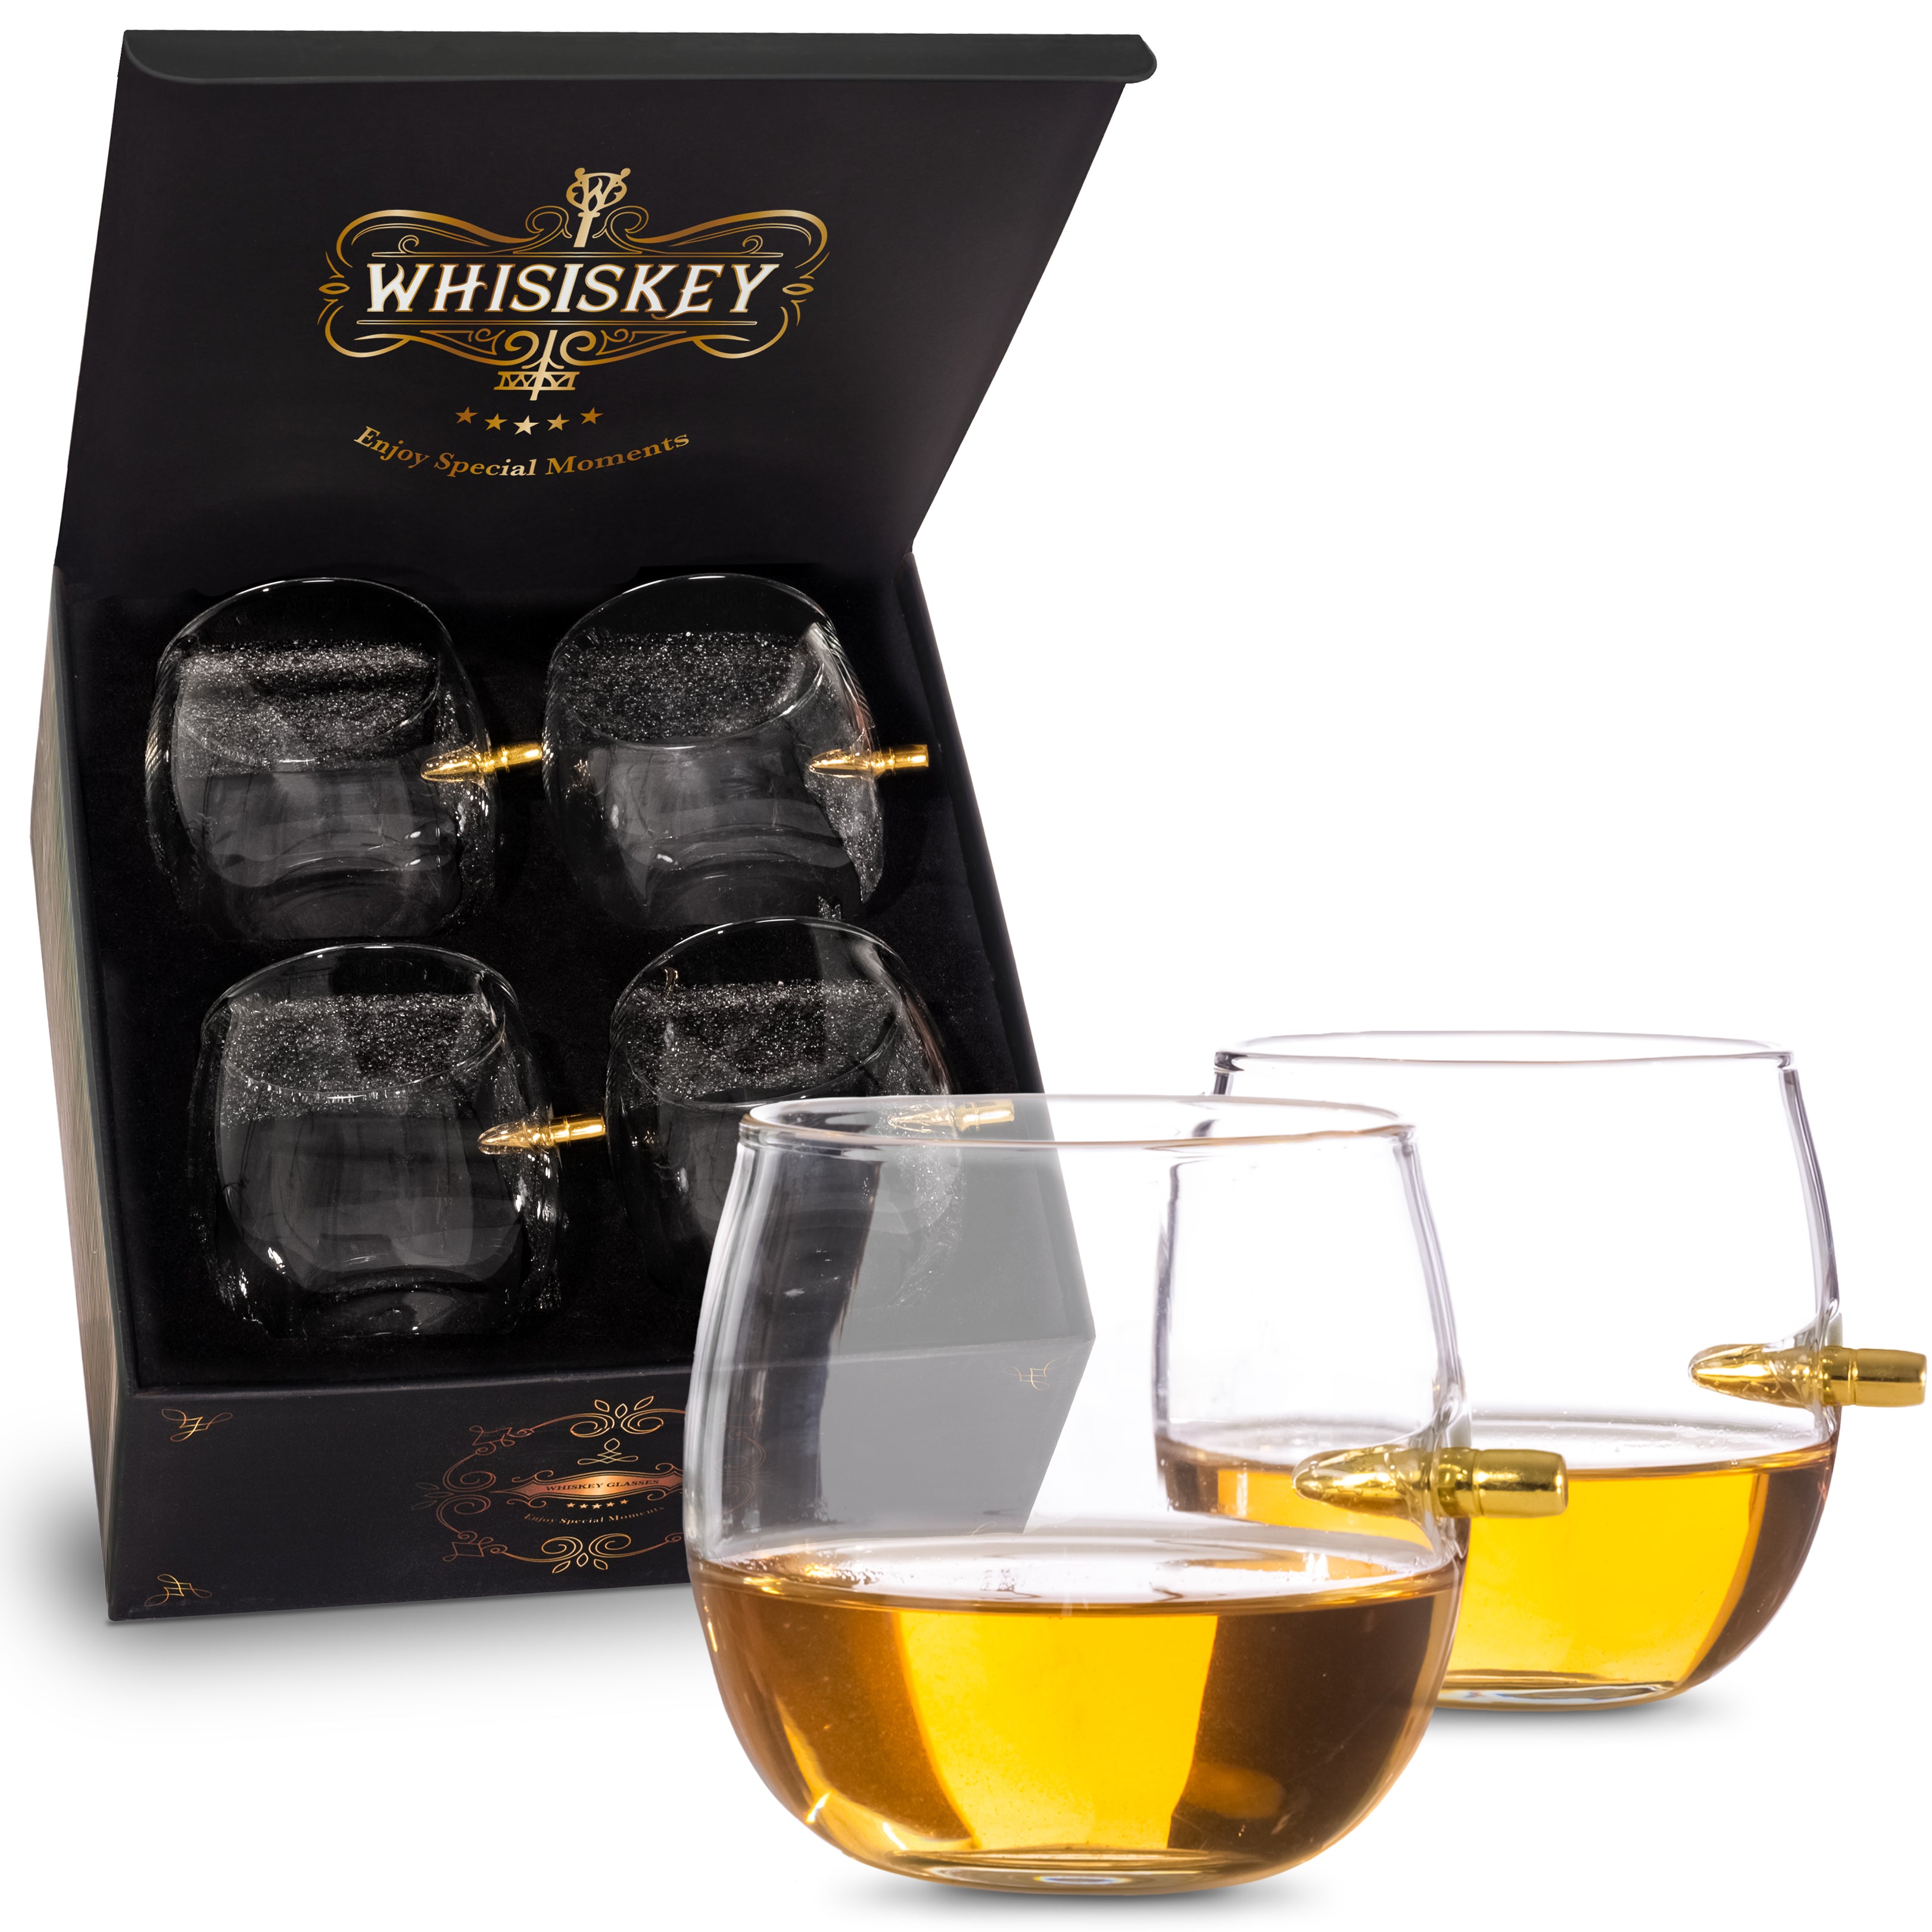 Whisky gläser - The Round Bullet Glasses